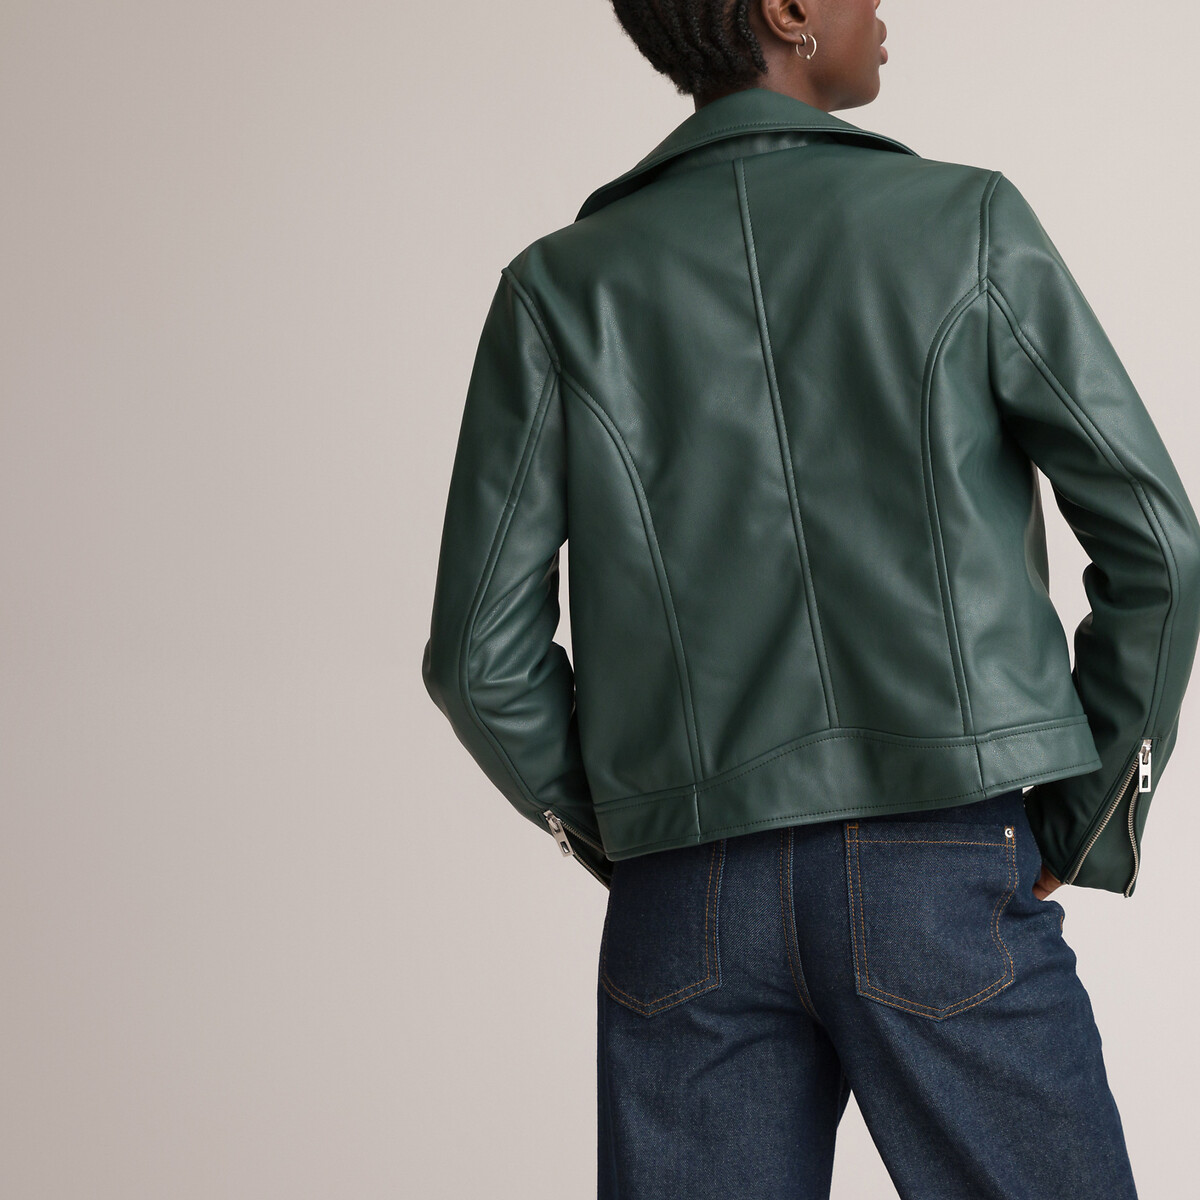 Куртка LA REDOUTE COLLECTIONS Куртка Короткая из искусственной кожи 40 (FR) - 46 (RUS) зеленый, размер 40 (FR) - 46 (RUS) Куртка Короткая из искусственной кожи 40 (FR) - 46 (RUS) зеленый - фото 4